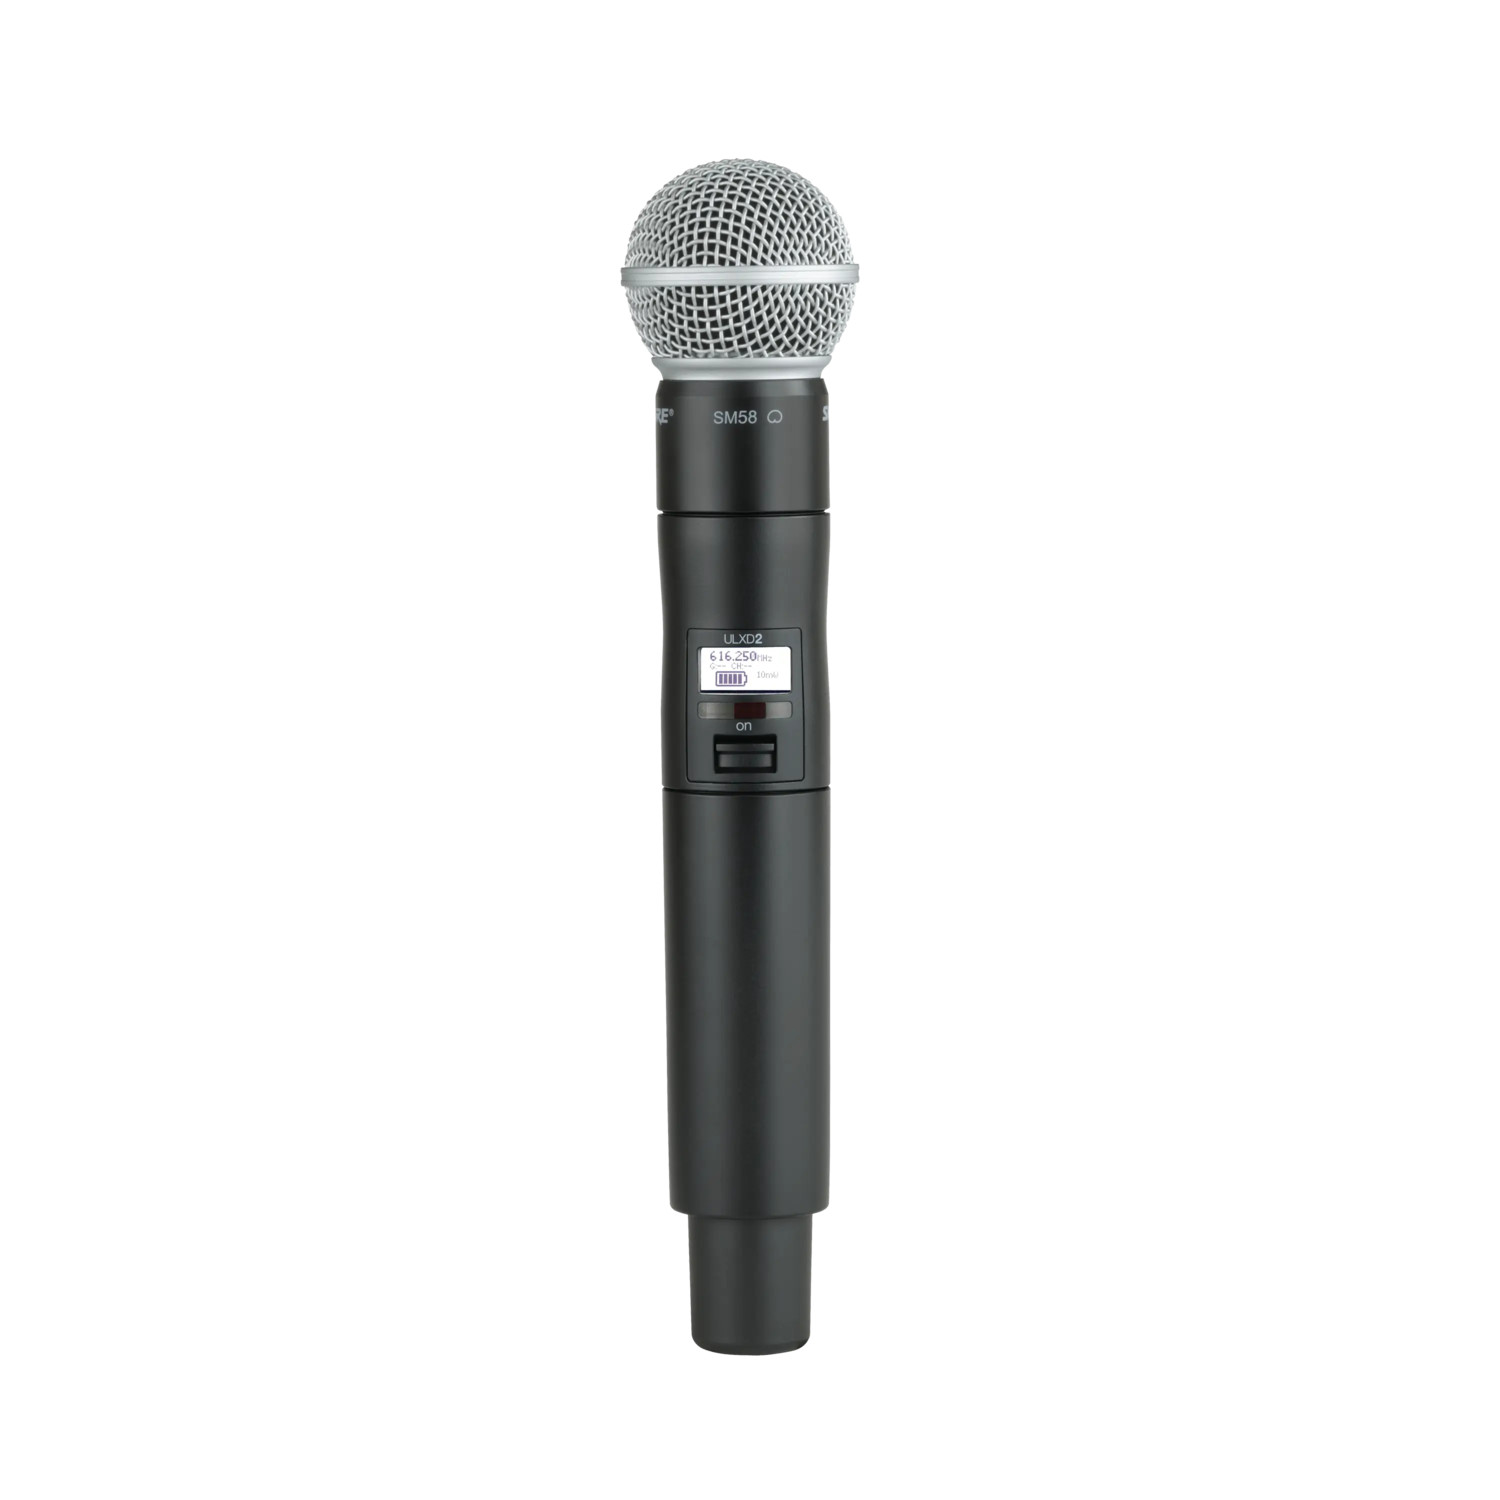 Shure-ULXD2-digitale-handheld-zender-van-de-ULX-D-draadloze-serie-met-SM58-microfoonkop